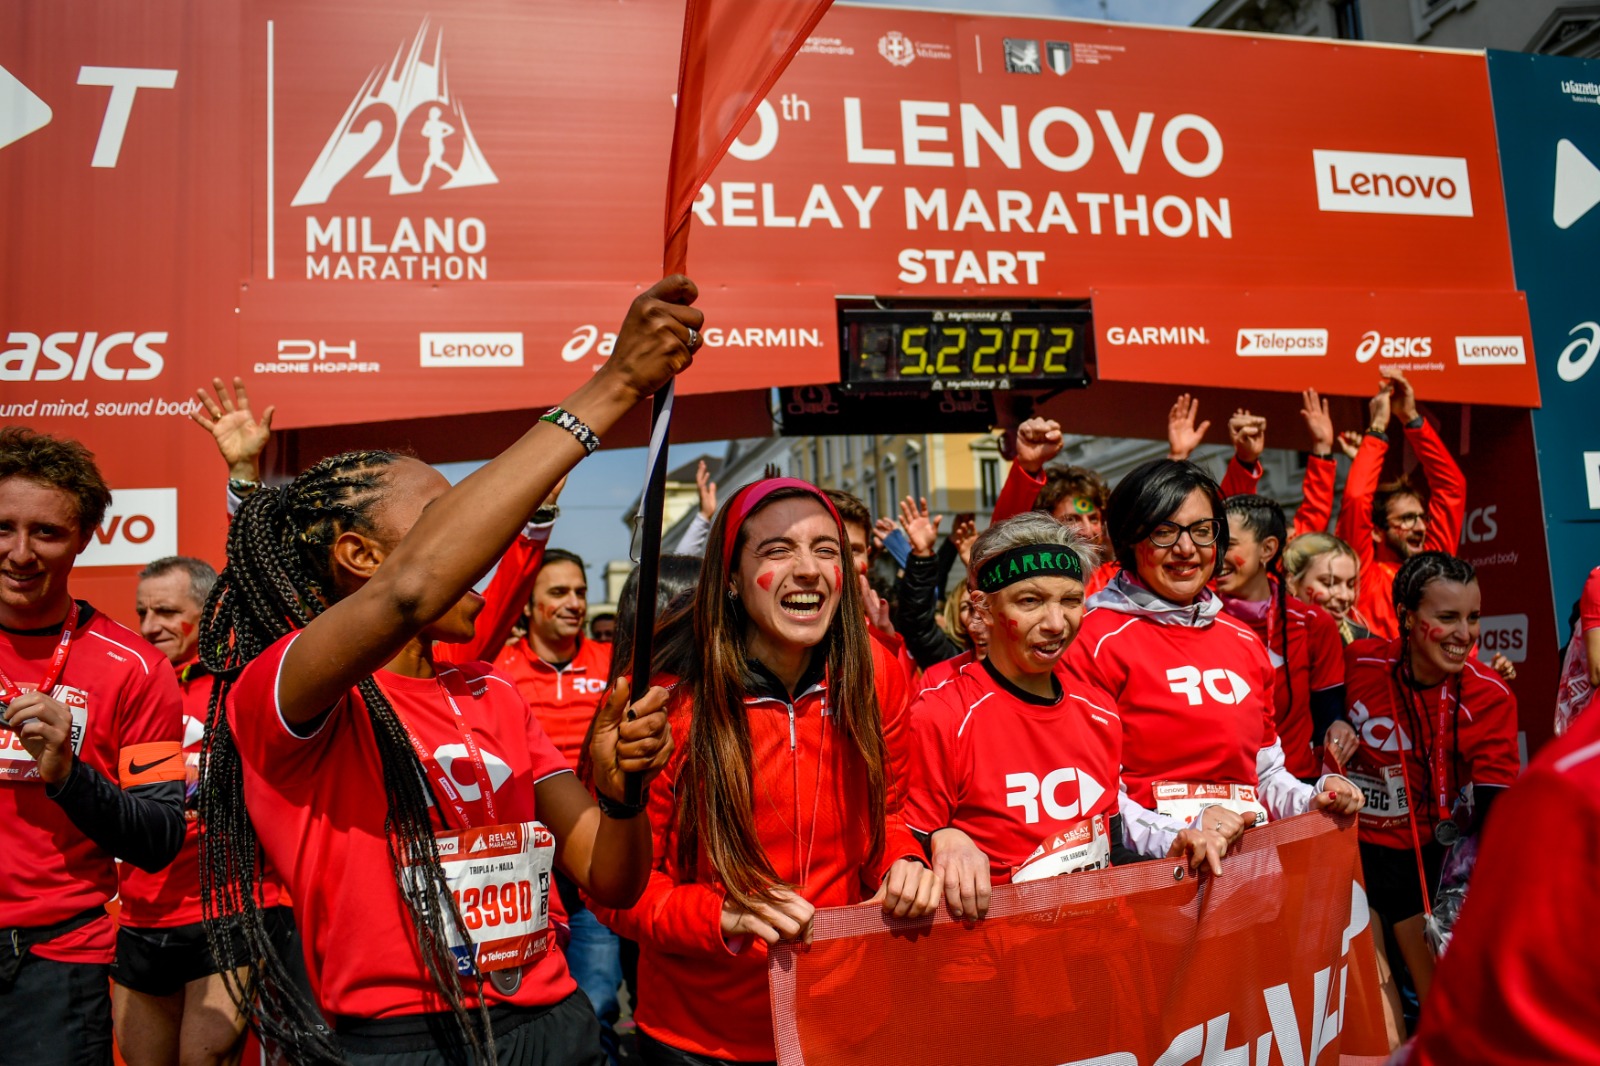 Milano Marathon. Aperte le iscrizioni alla staffetta, la Lenovo Relay Marathon 2023.